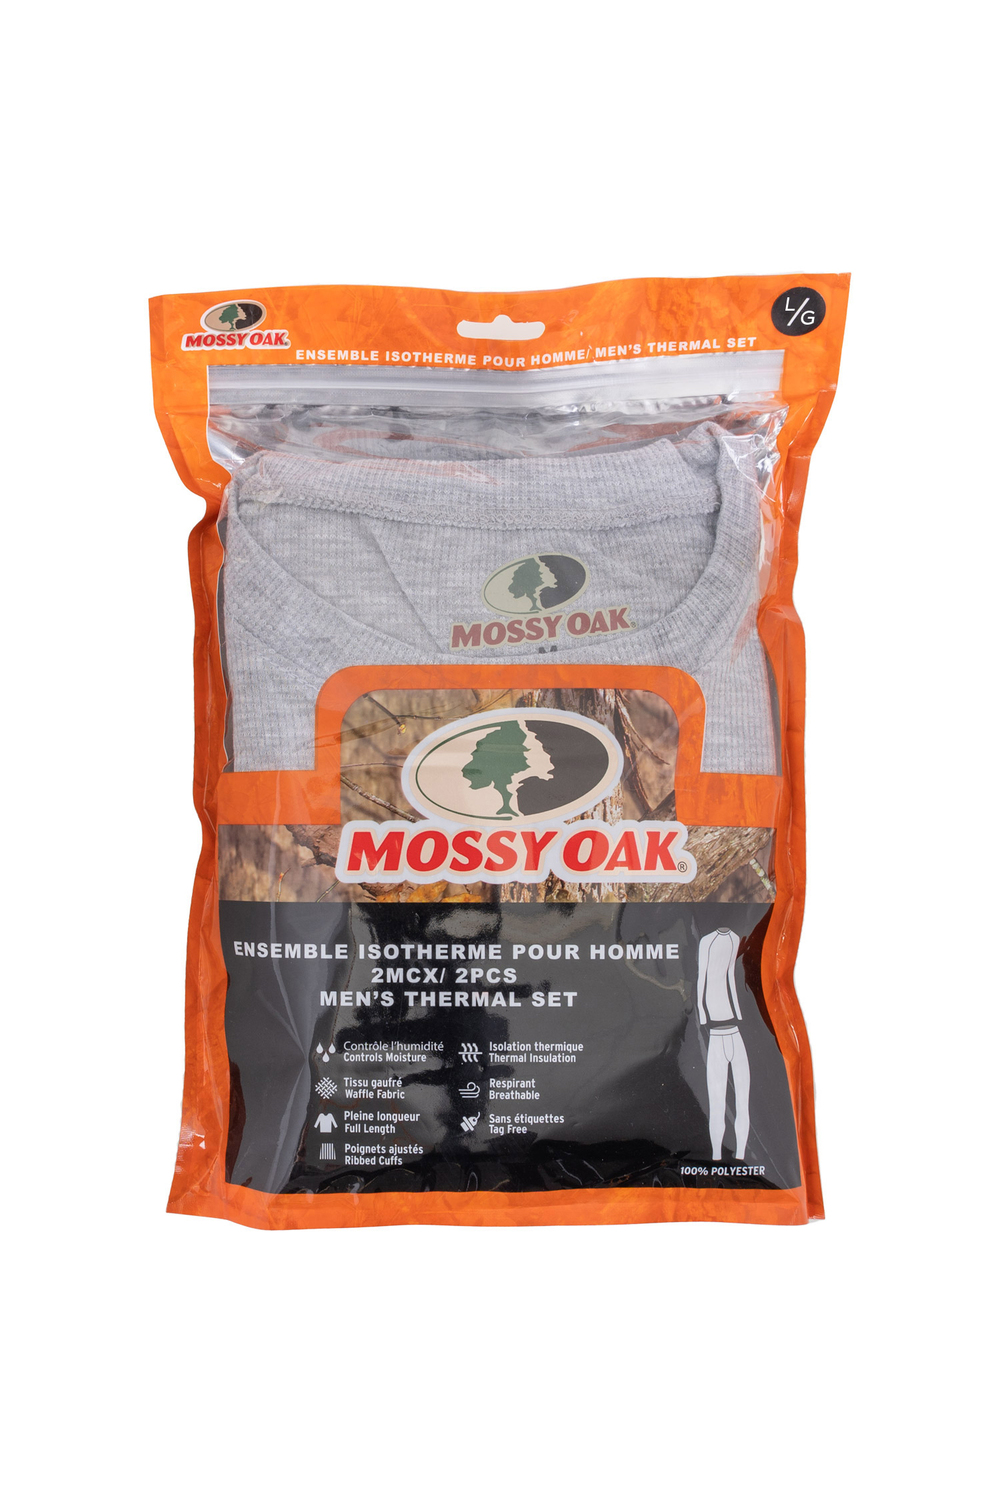 Mossy Oak - Ens. isothermique 2 mcx pour hommes, gris, grand (G)